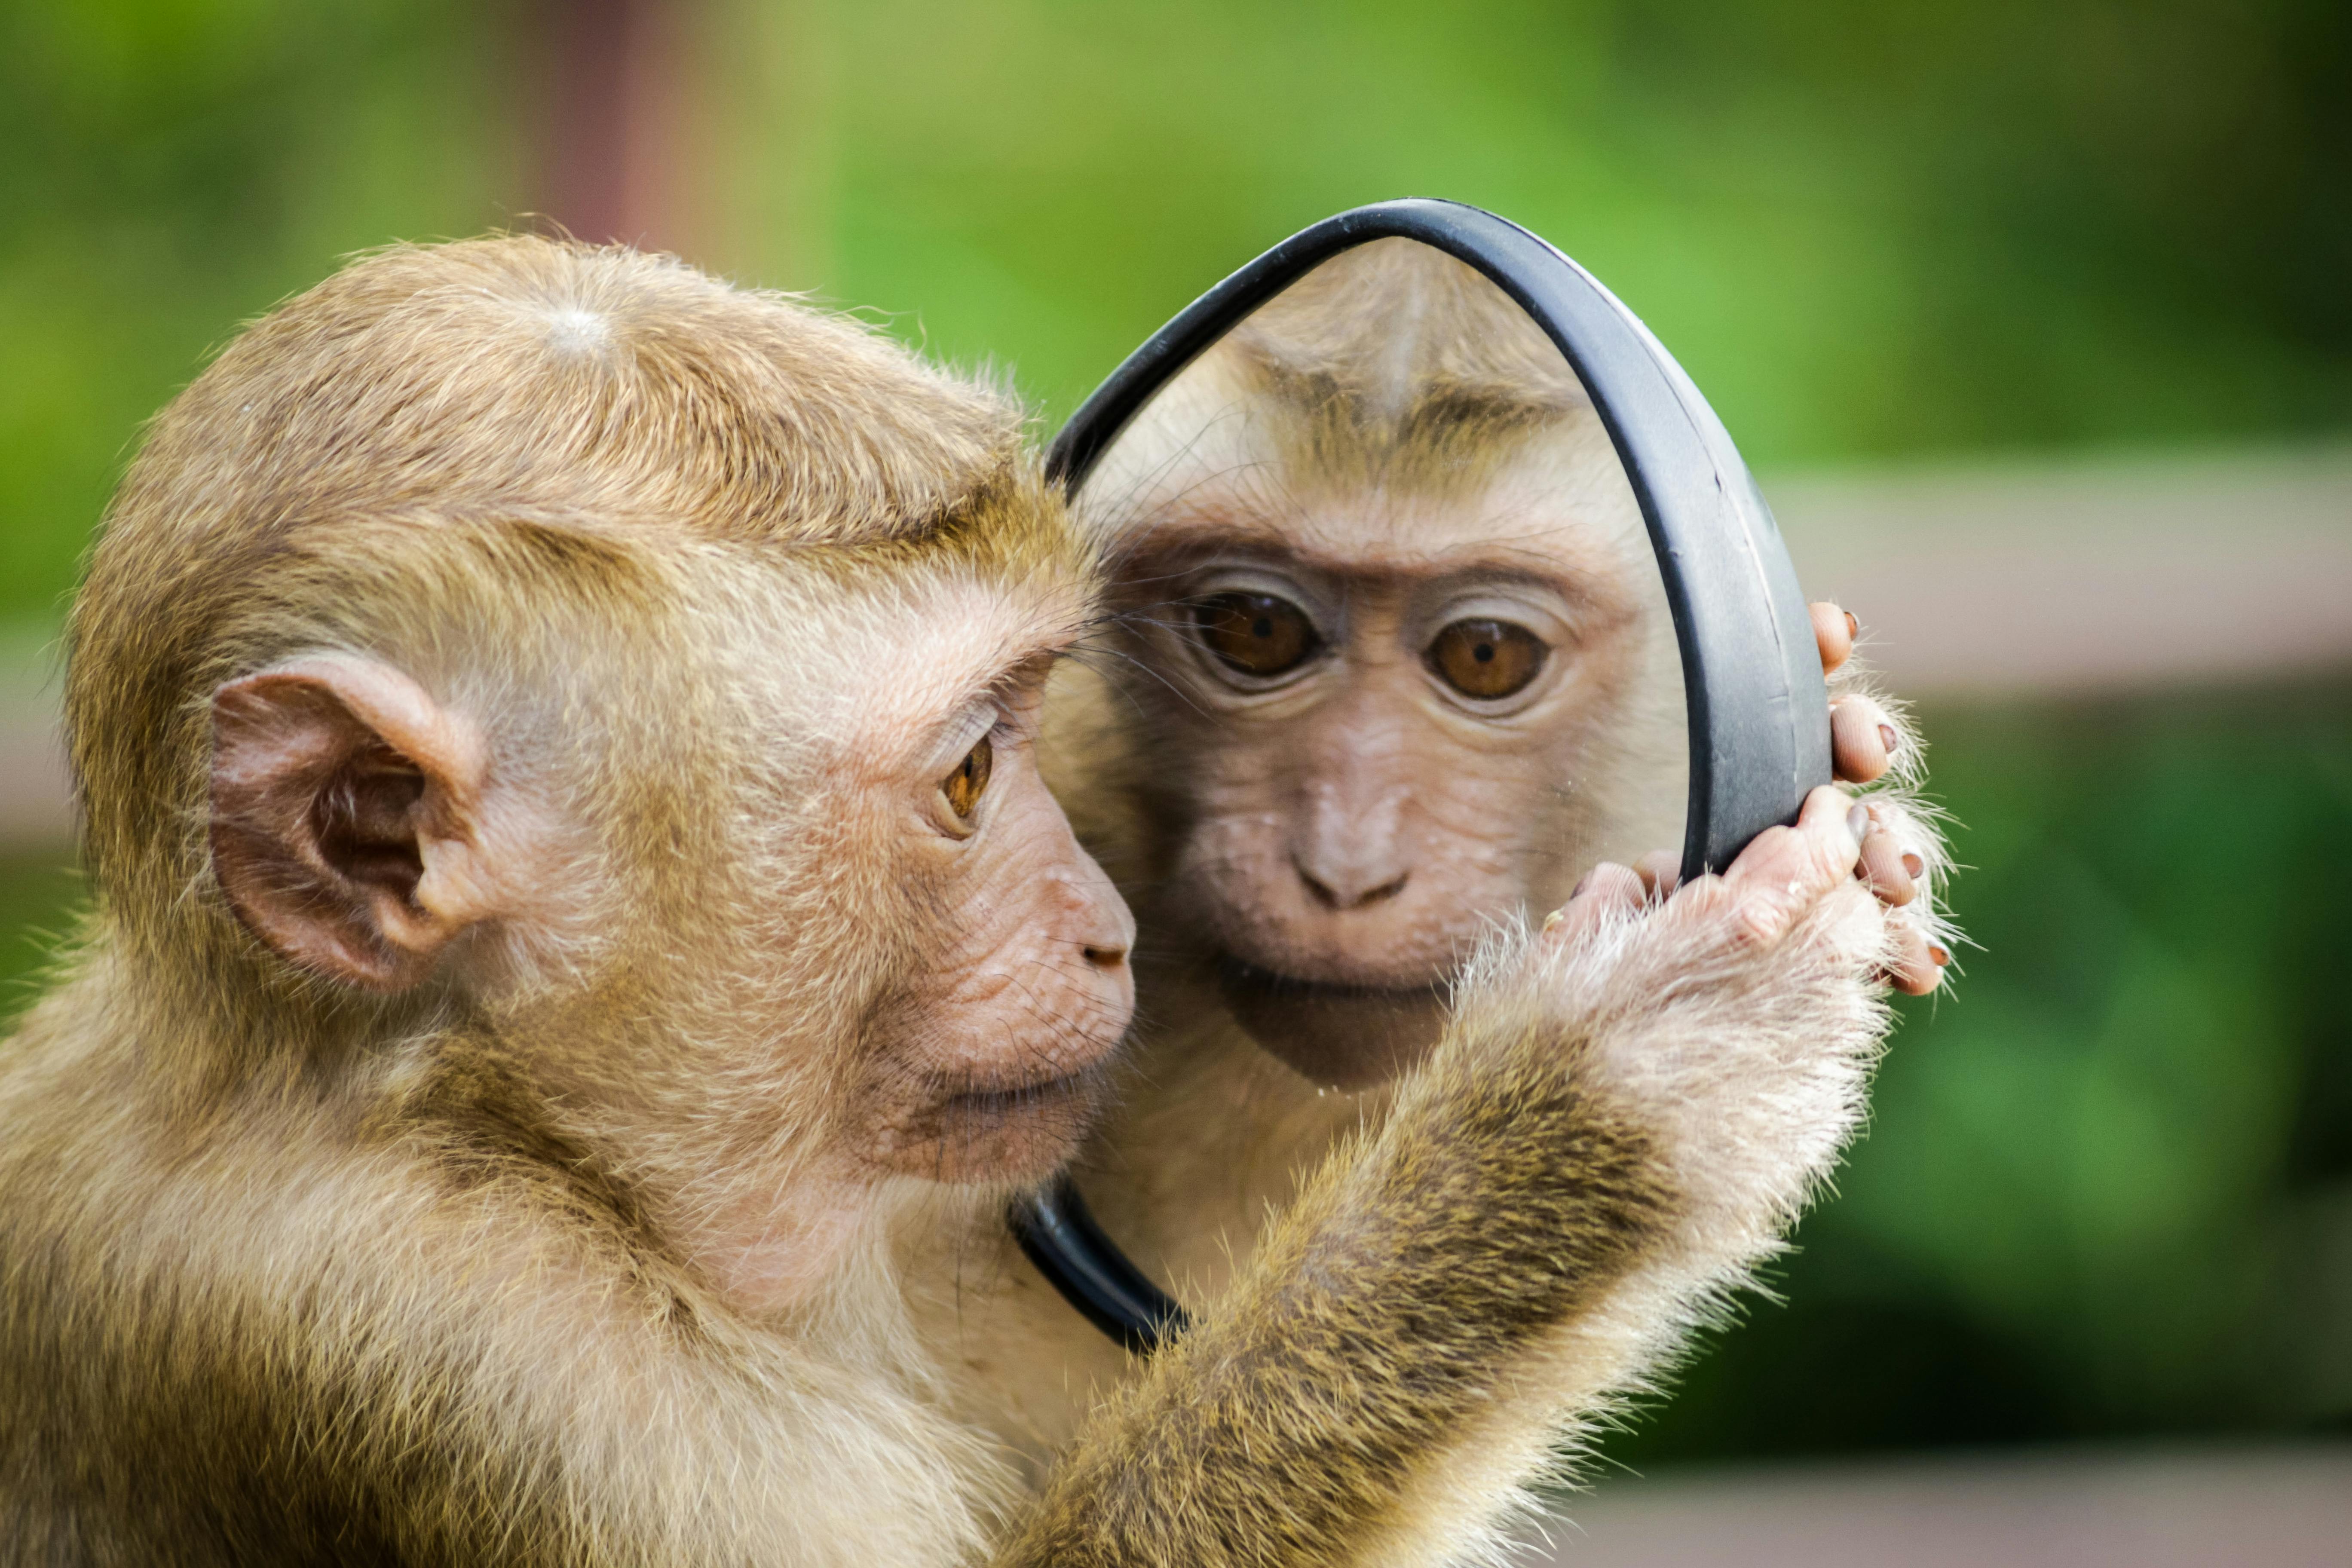 Monkey selfie row - BBC News - YouTube